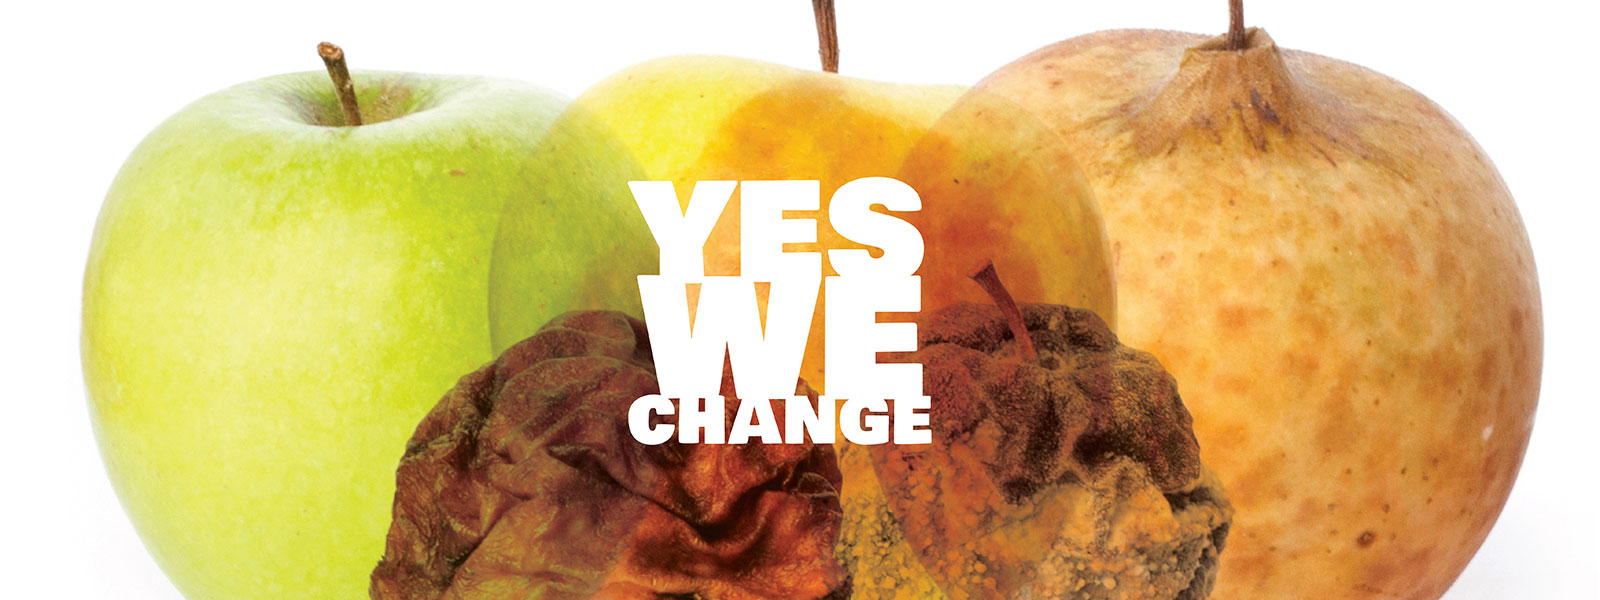 Das Motto des diesjährigen Fotowettbewerbs lautet Yes we change. Dazu passend ist ein Apfel abgebildet, der sein Aussehen verändert: Von der reifen Frucht bis hin zum verschimmelten Rest.